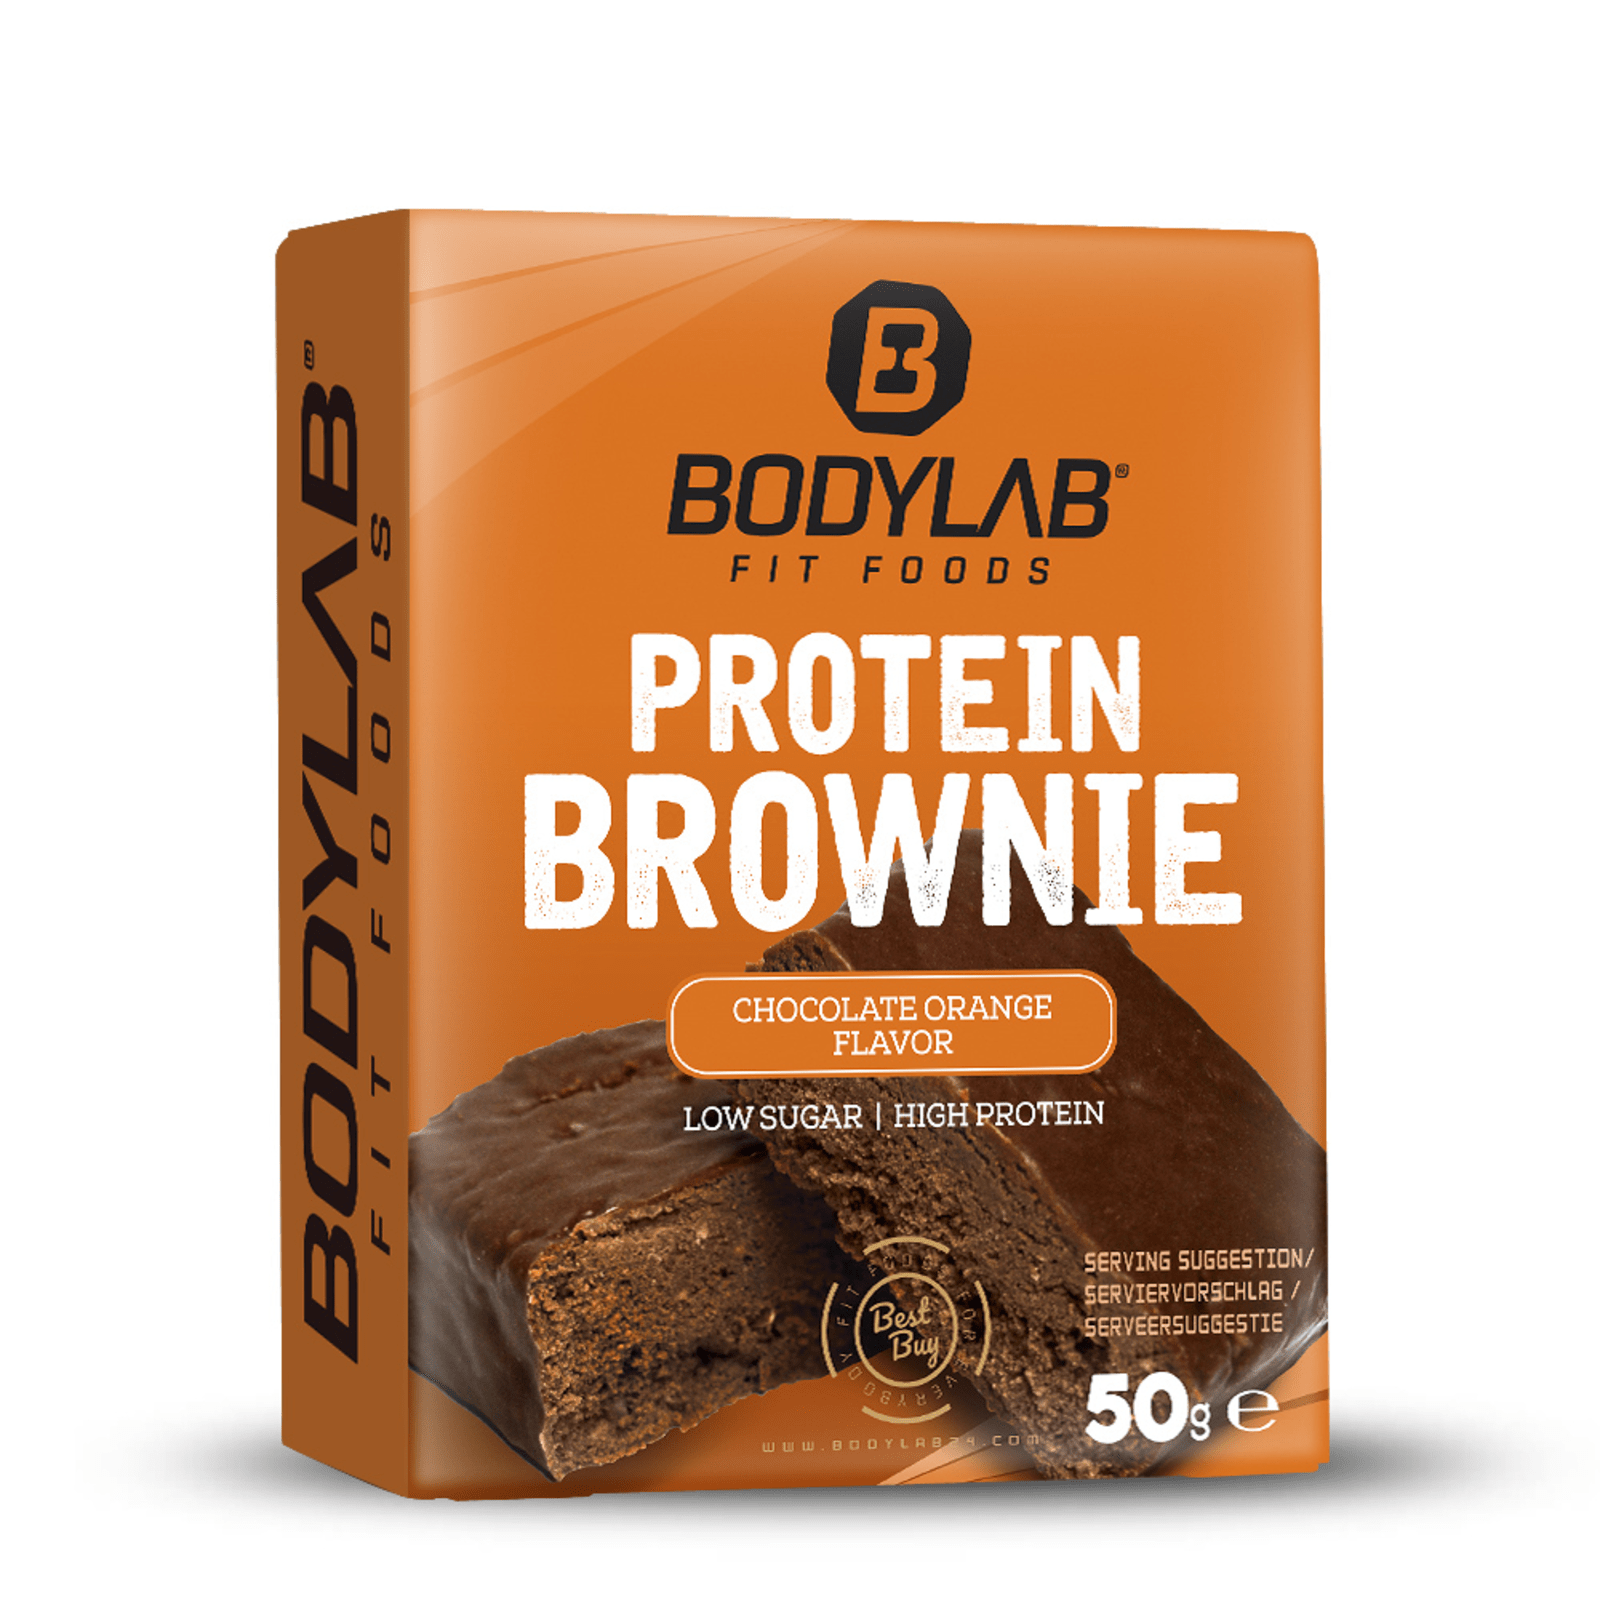 Tochi boom Van storm gewelddadig Protein Brownie (12x50g) van Bodylab24 kopen | Bodylab Shop